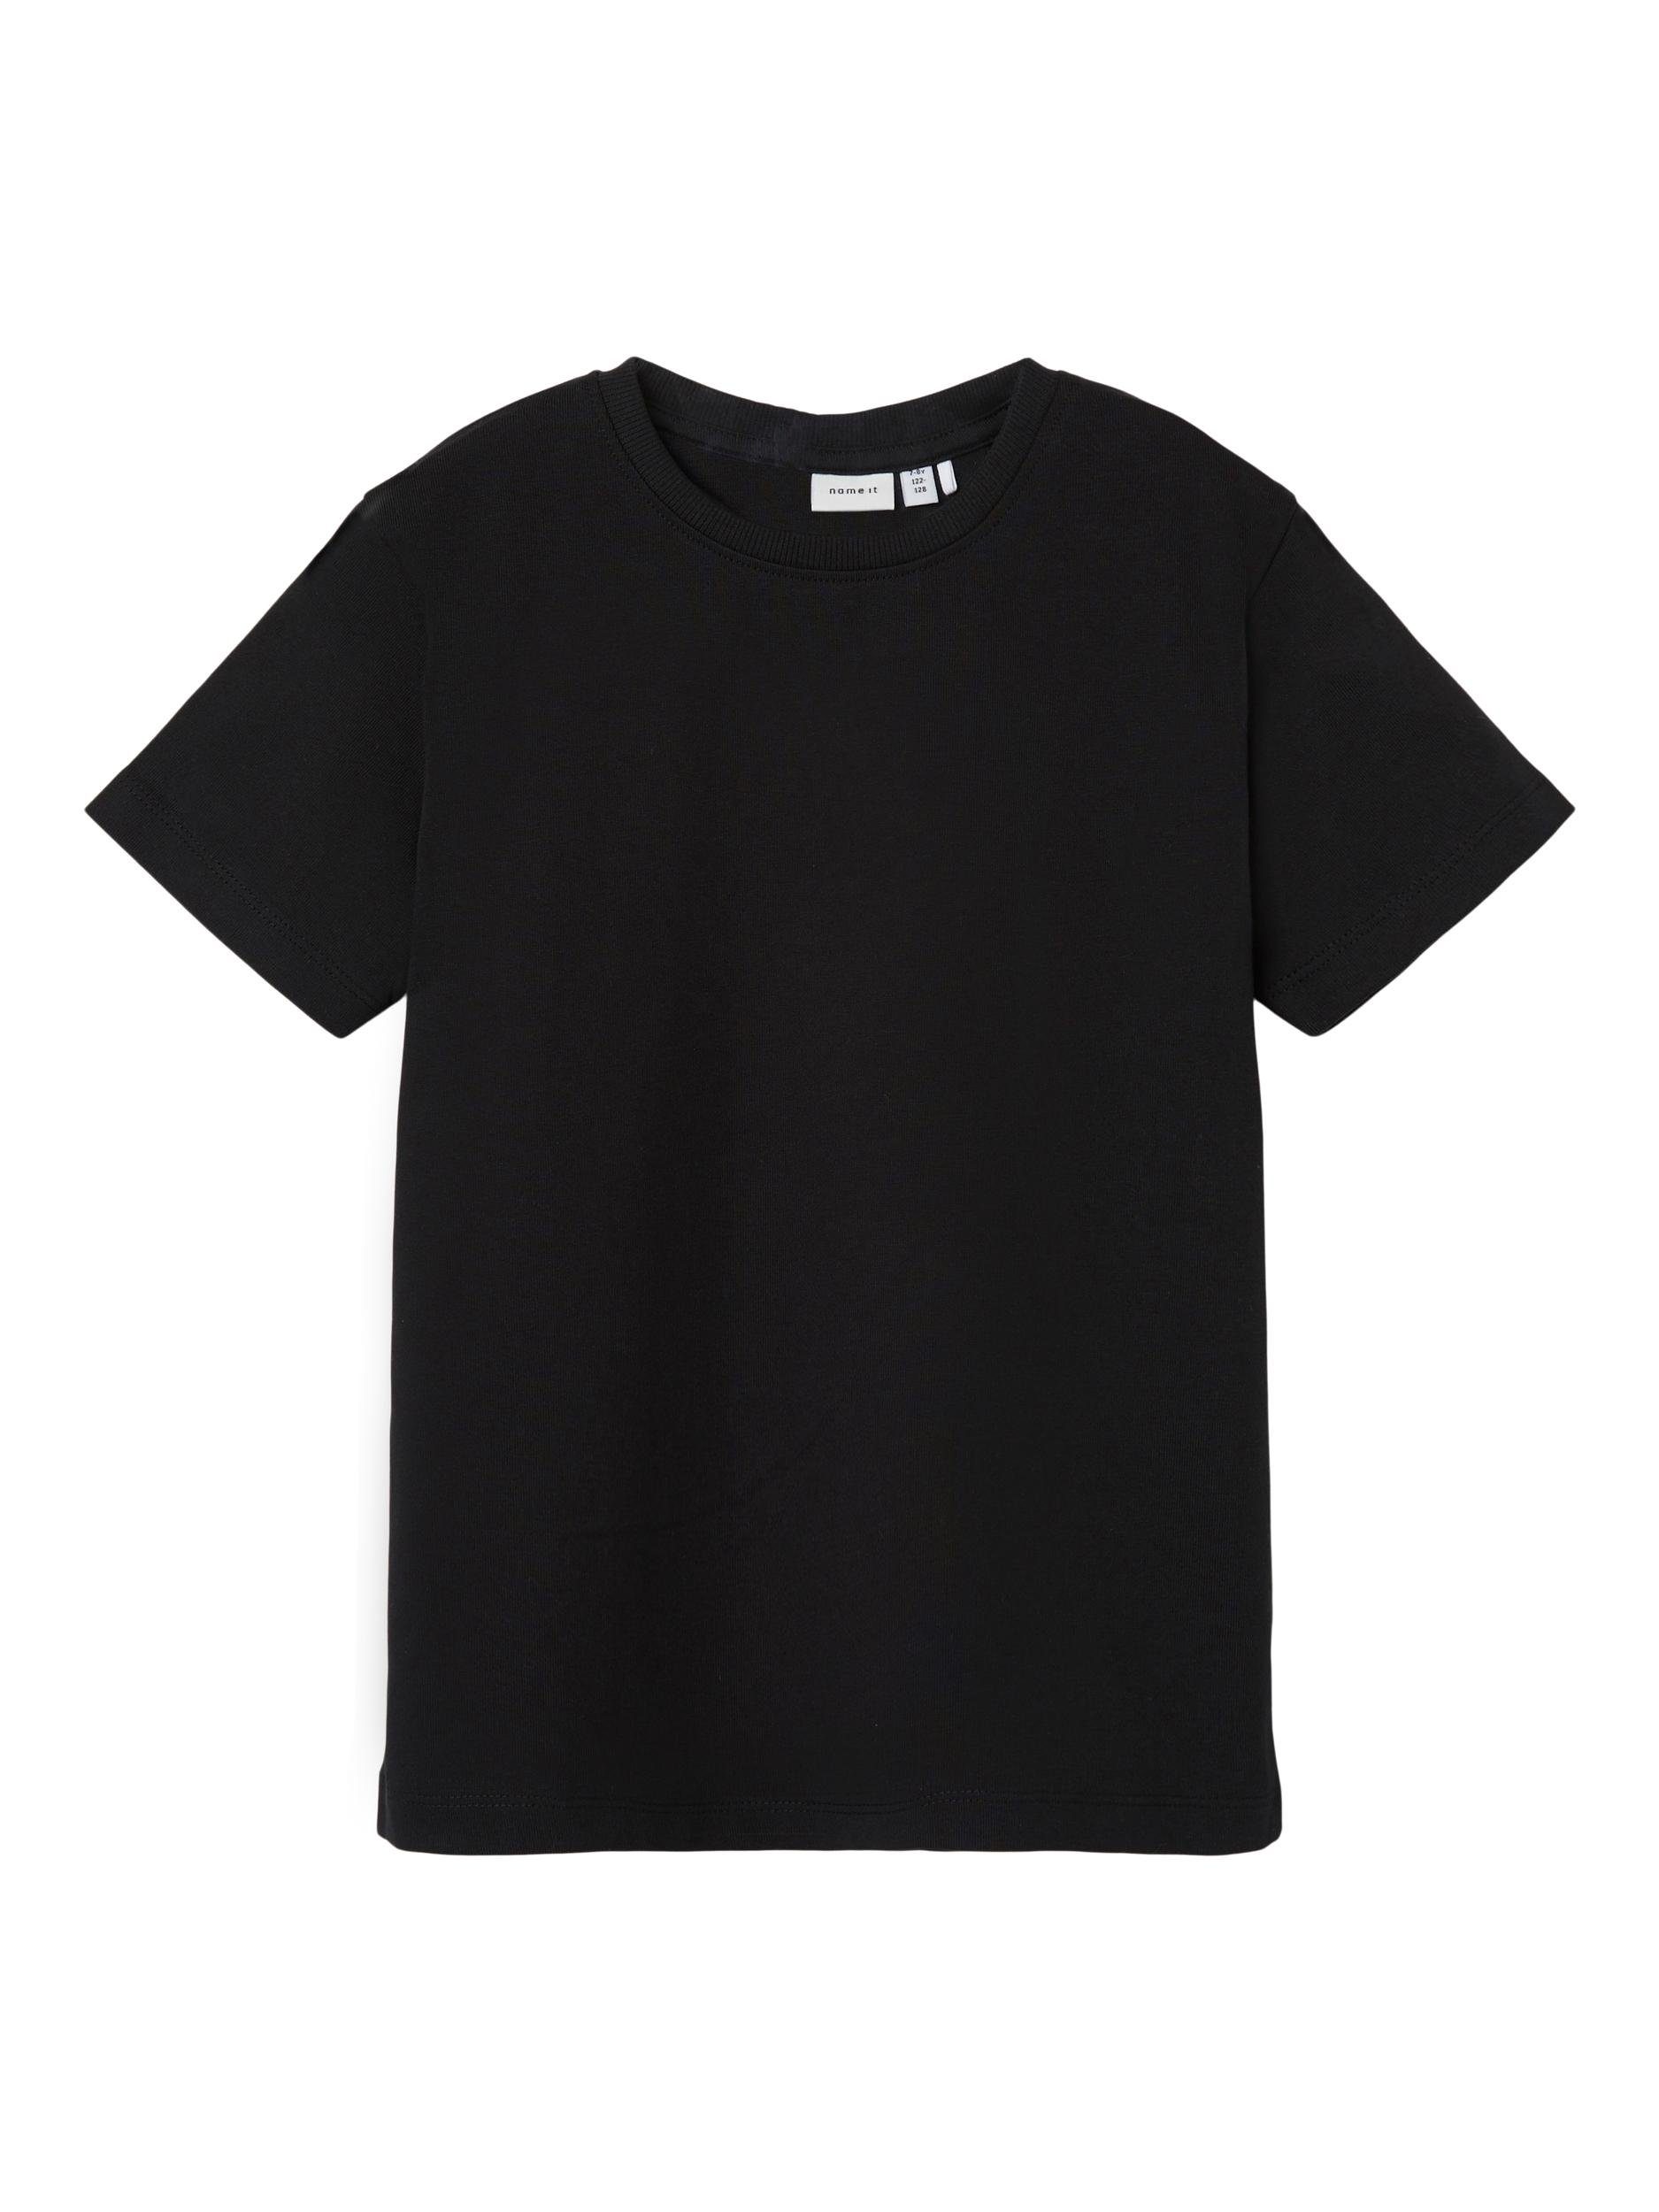 TOP T-Shirt It Name S/S LOOSE black NKMTORSTEN